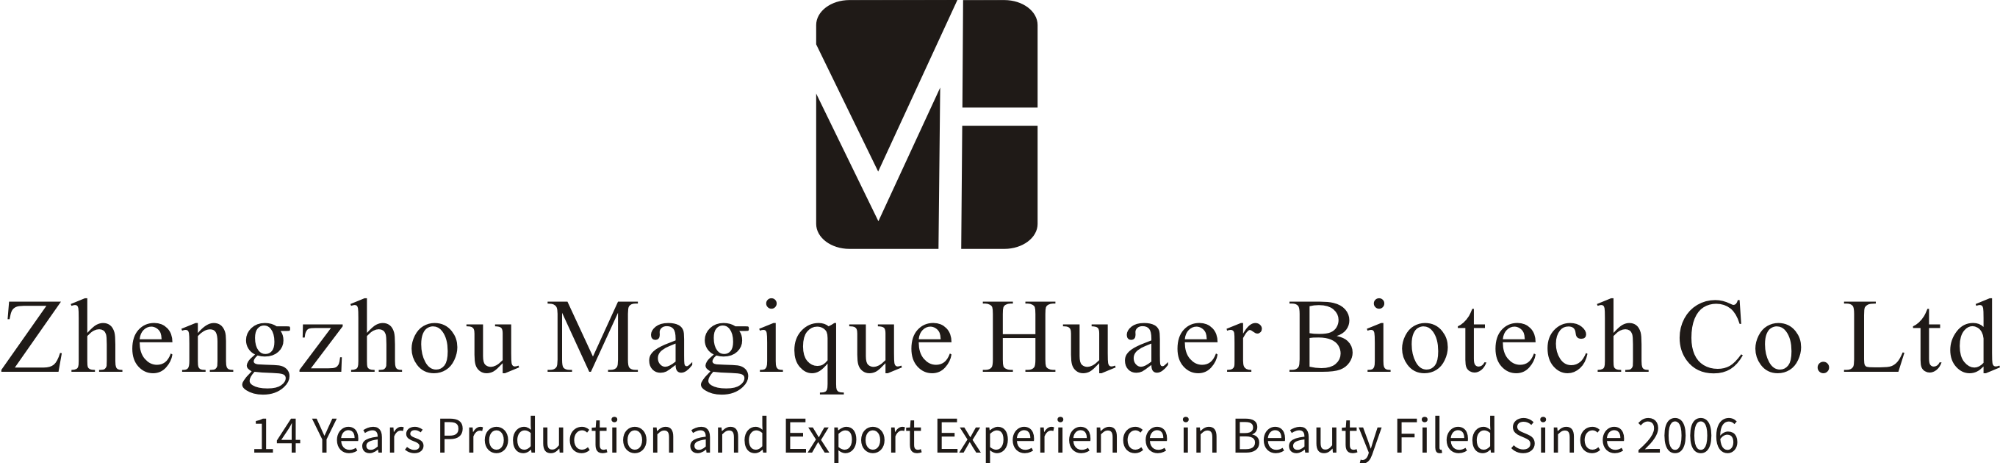 Zhengzhou Magique Huaer Biotech Co.,Ltd